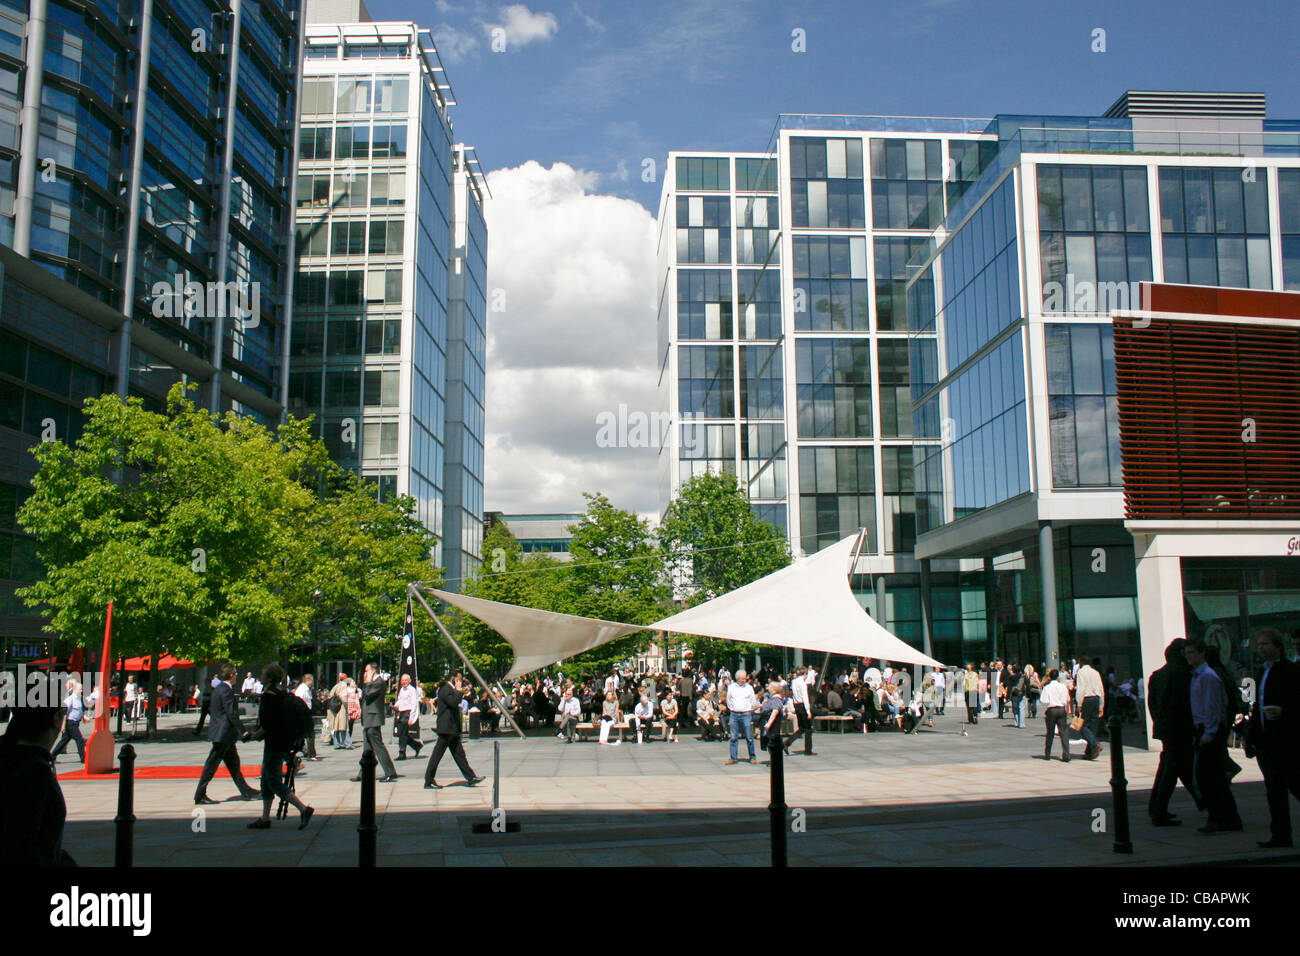 Les travailleurs de la ville de Londres d'avoir un peu de temps en dehors de leur heure de dîner, de manger au soleil, profitant de l'air frais. Banque D'Images